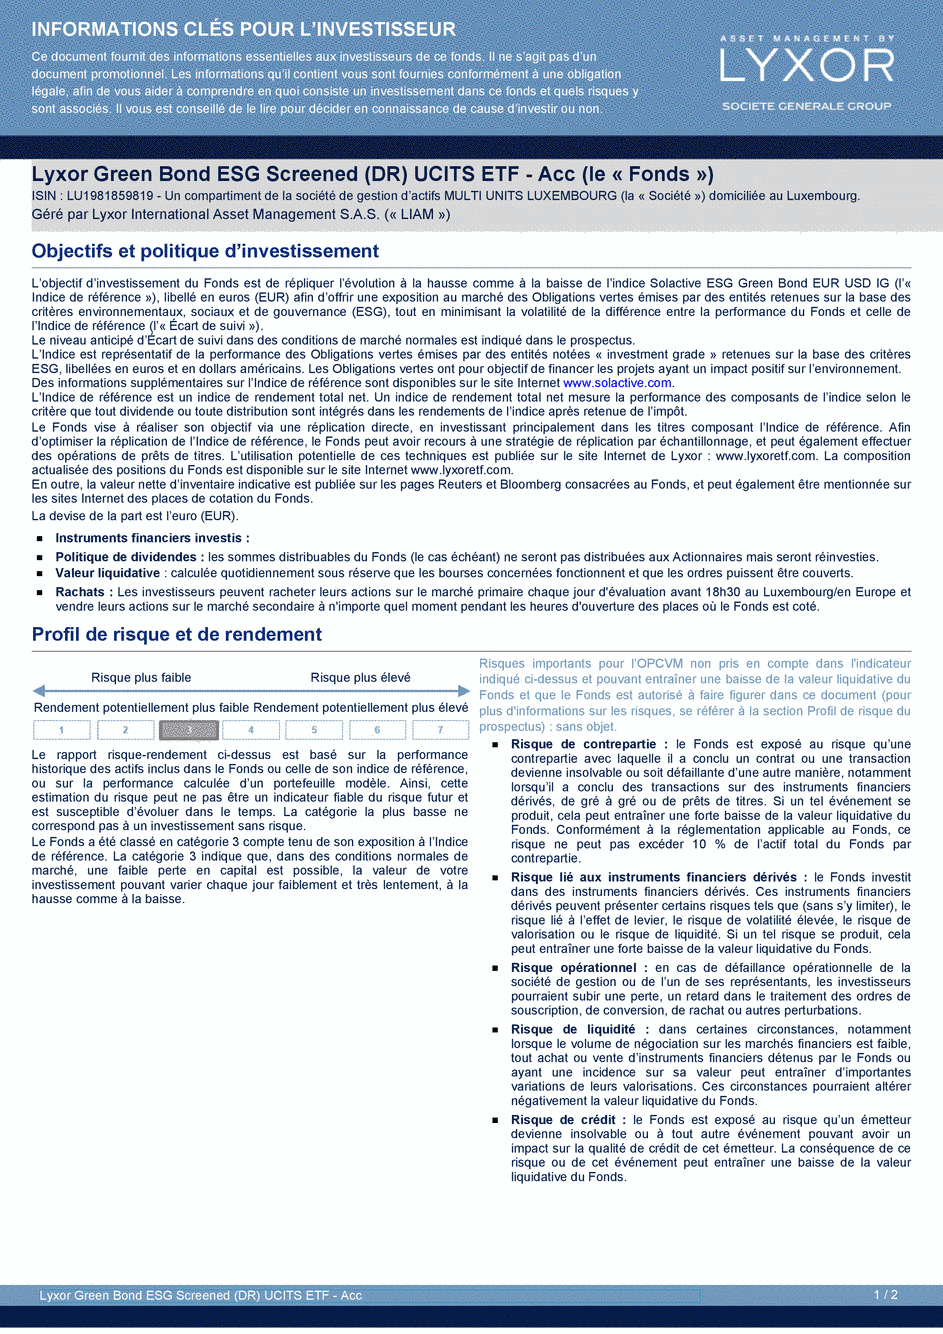 DICI Lyxor Green Bond ESG Screened (DR) UCITS ETF - Acc - 25/10/2019 - Français